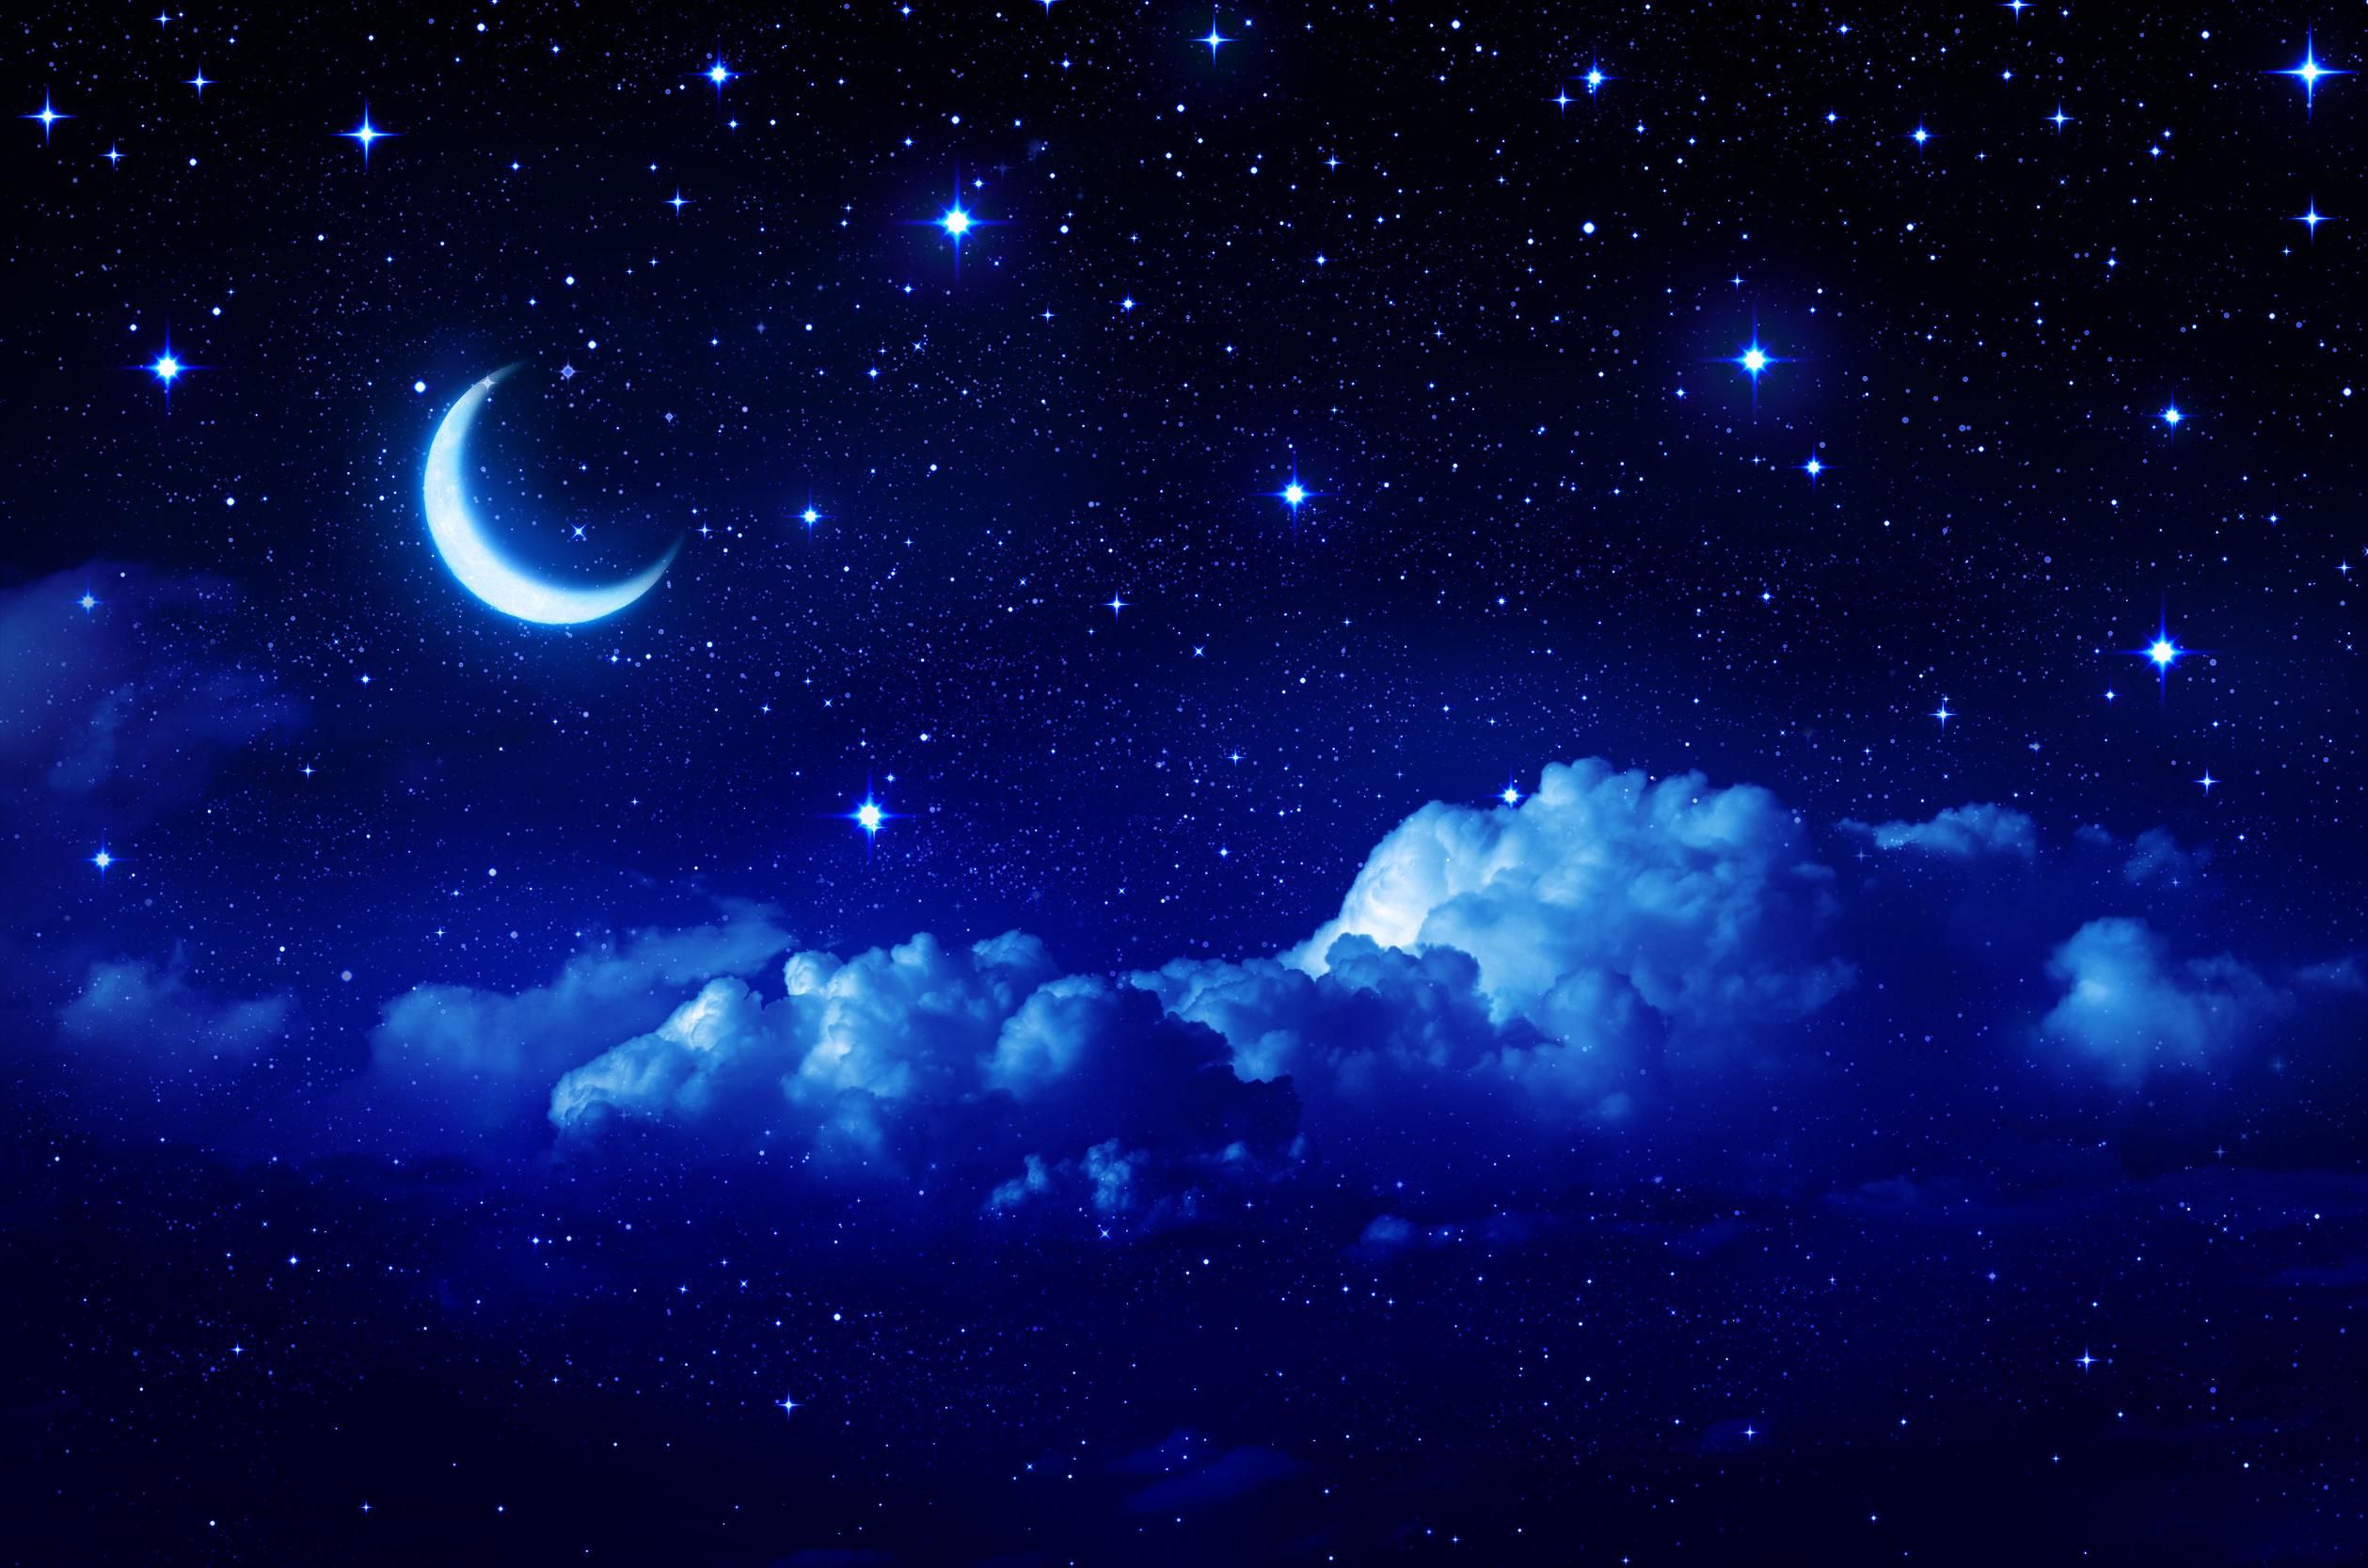 月壁紙ダウンロード,空,青い,雰囲気,自然,宇宙